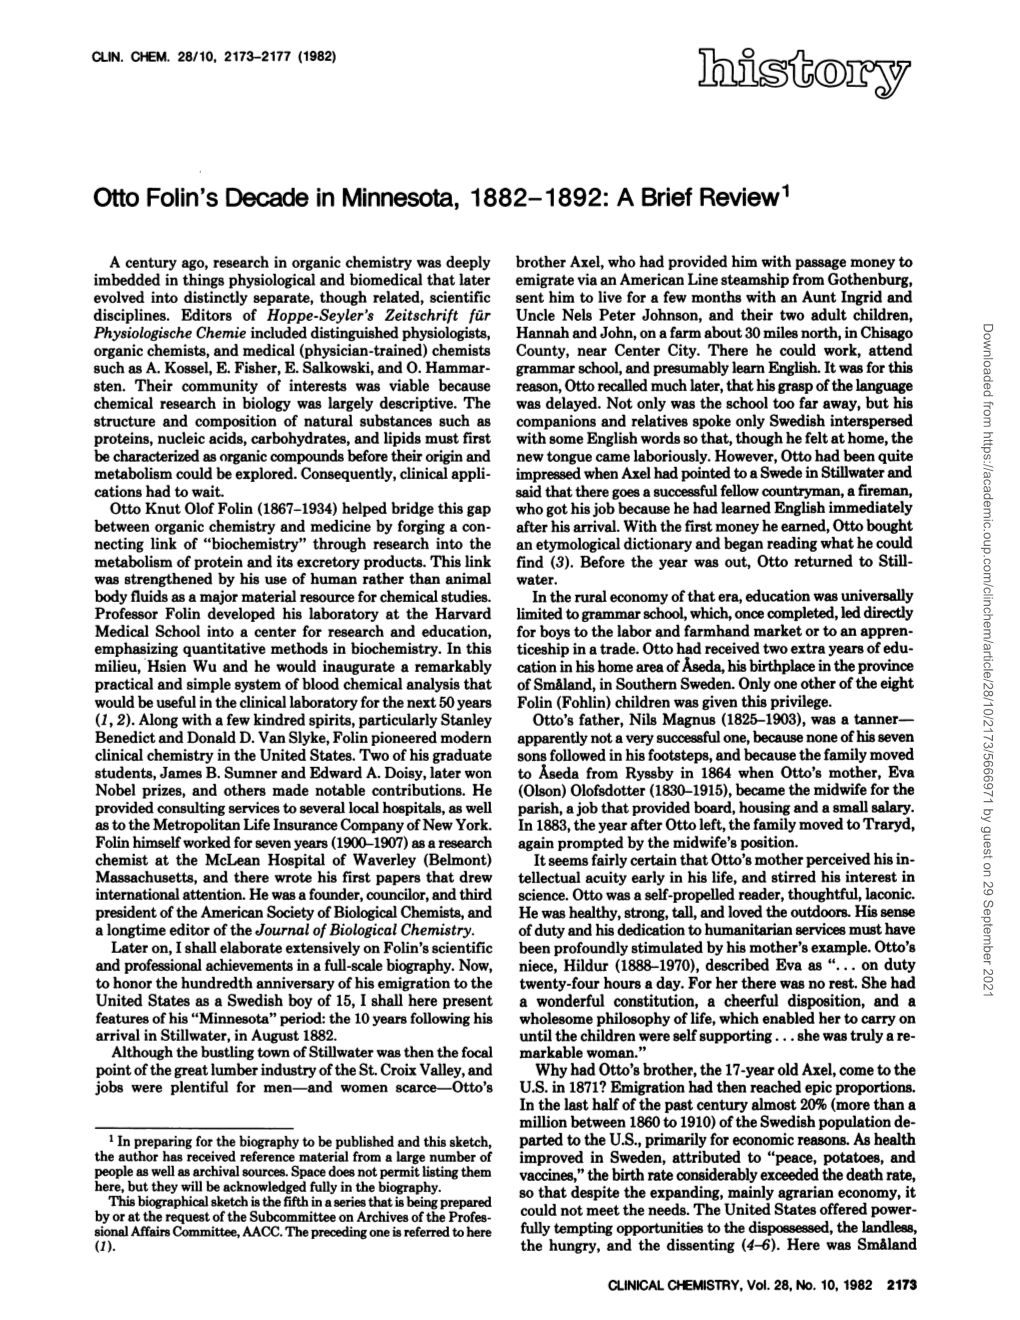 Otto Folin's Decade in Minnesota, 1882-1892